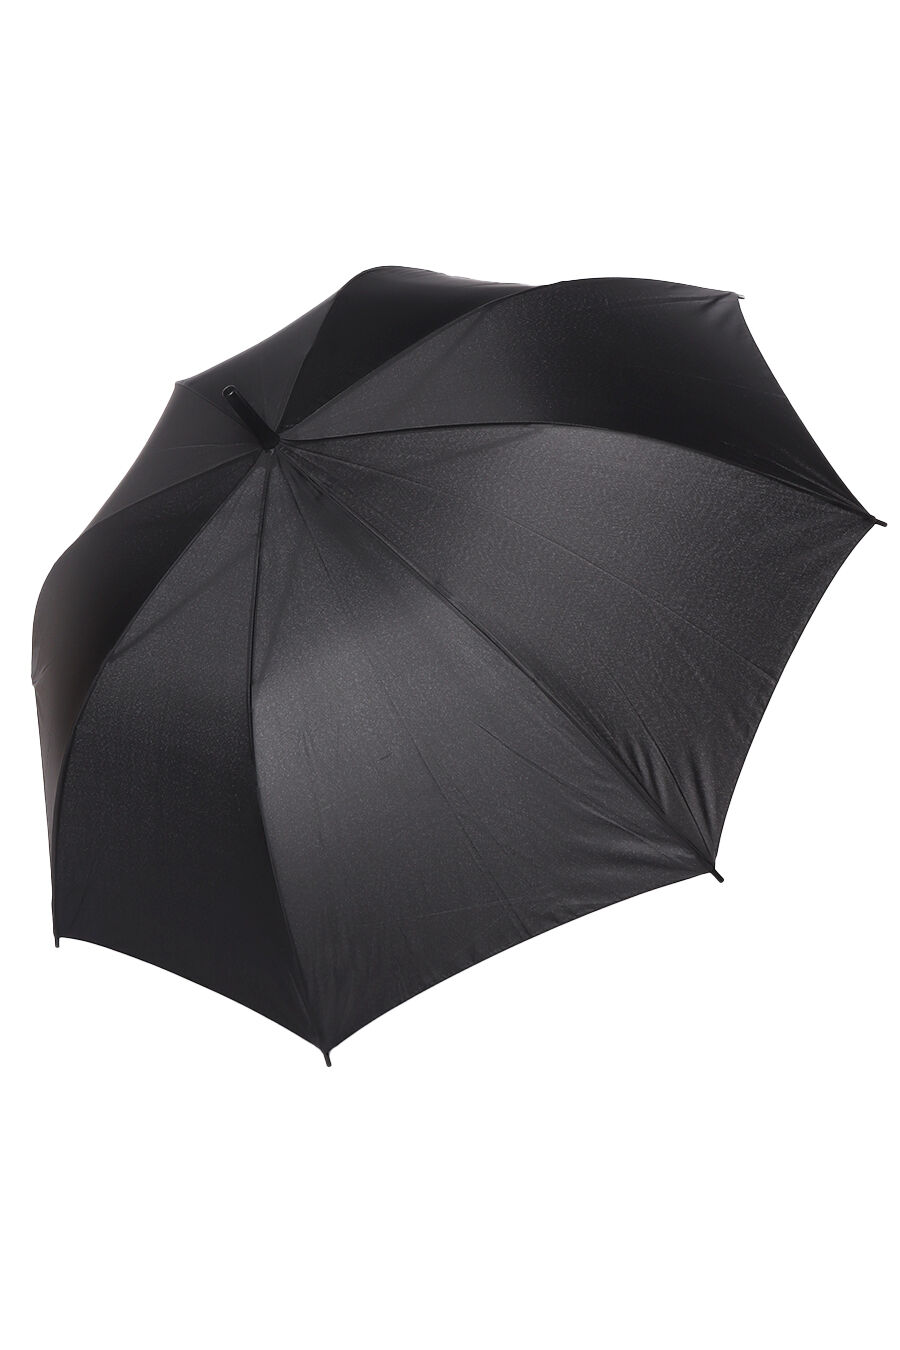 Зонт муж. Umbrella PLS2322 полуавтомат трость (черный)